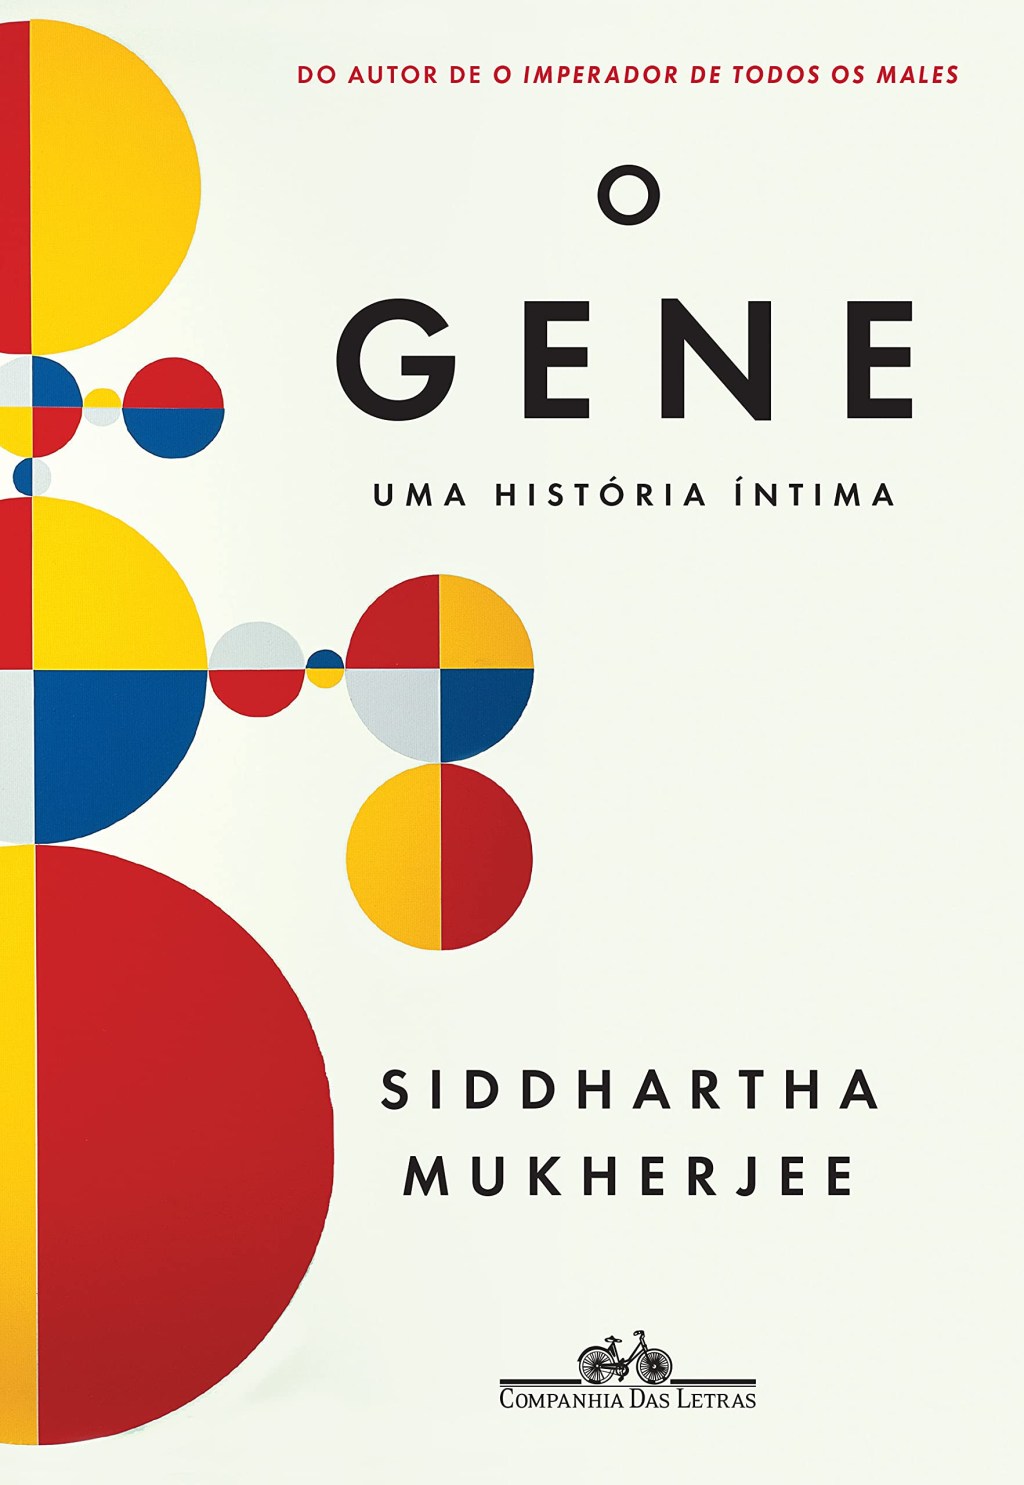 Capa do livro "O Gene"